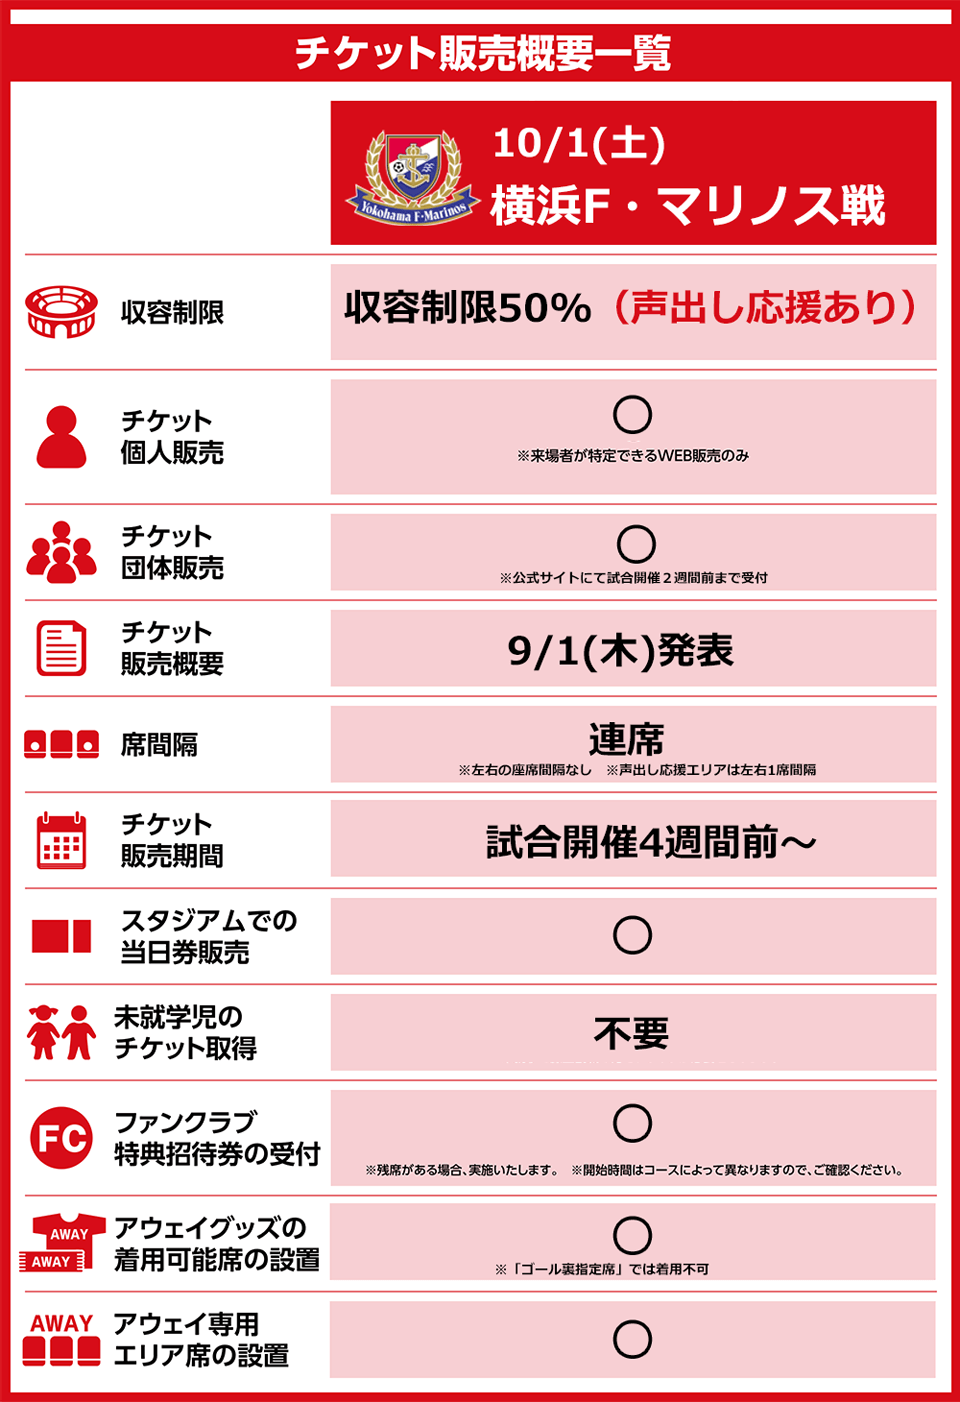 10 1 土 横浜fm戦 チケット販売概要 のお知らせ ニュース 名古屋グランパス公式サイト